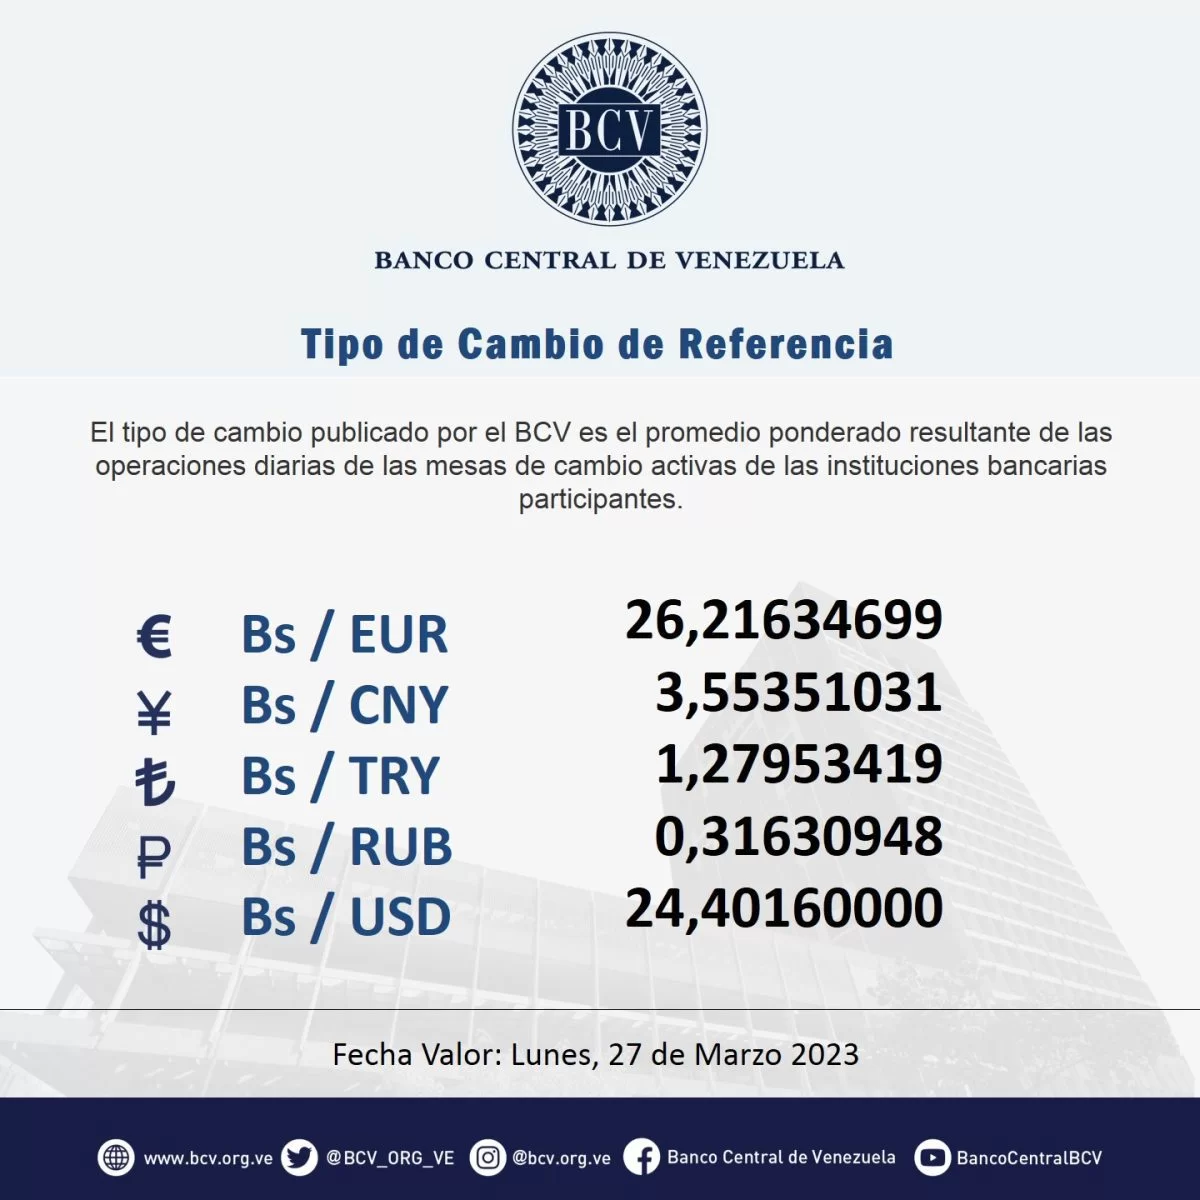 dolartoday en venezuela precio del dolar este sabado 25 de marzo de 2023 laverdaddemonagas.com bcv223